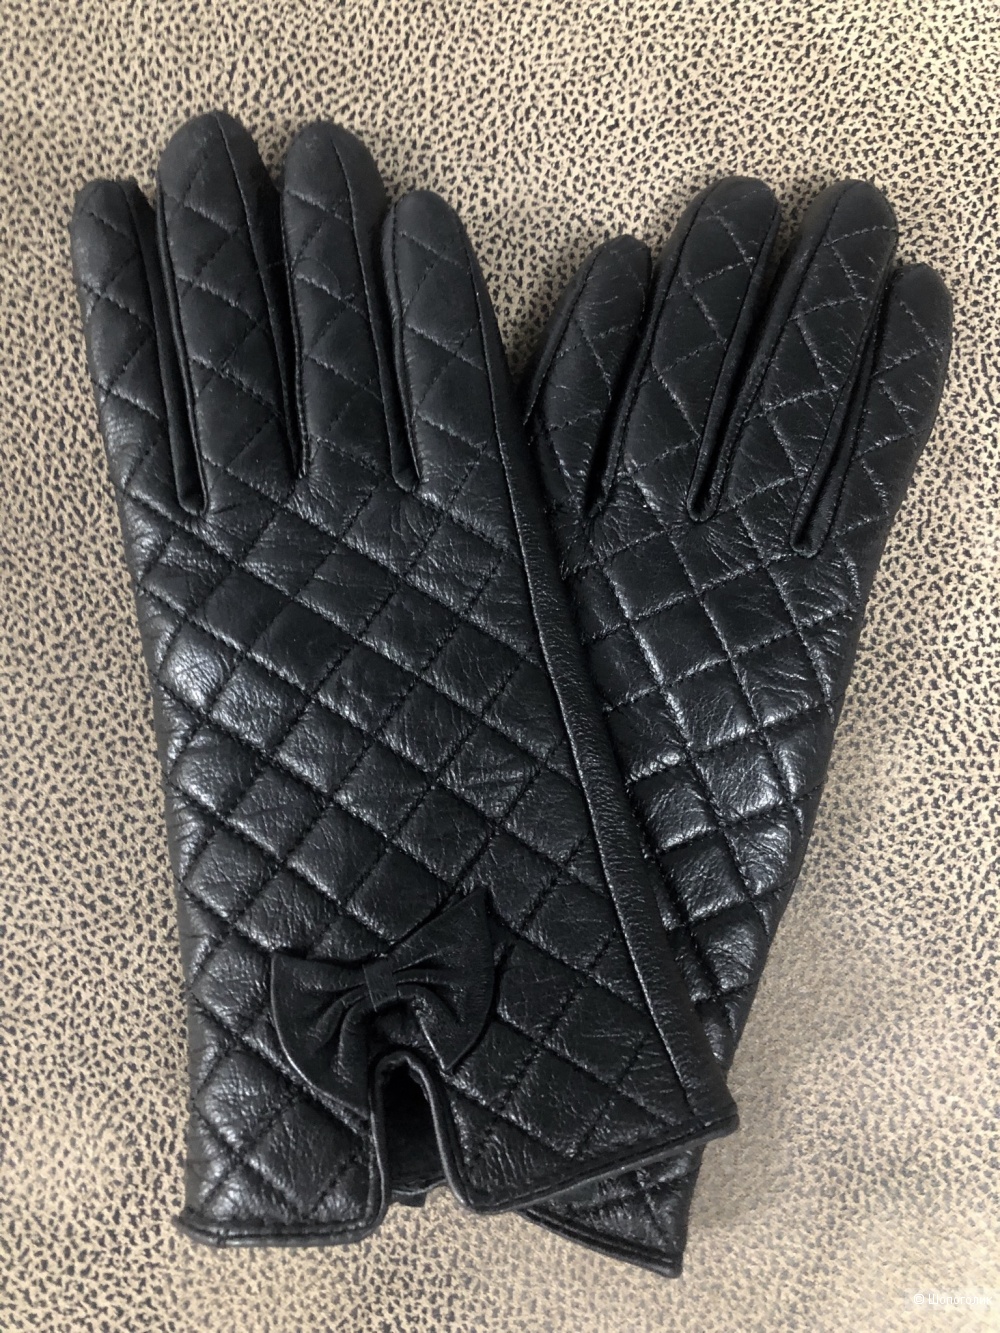 Кожаные перчатки, размер 6,5-7.